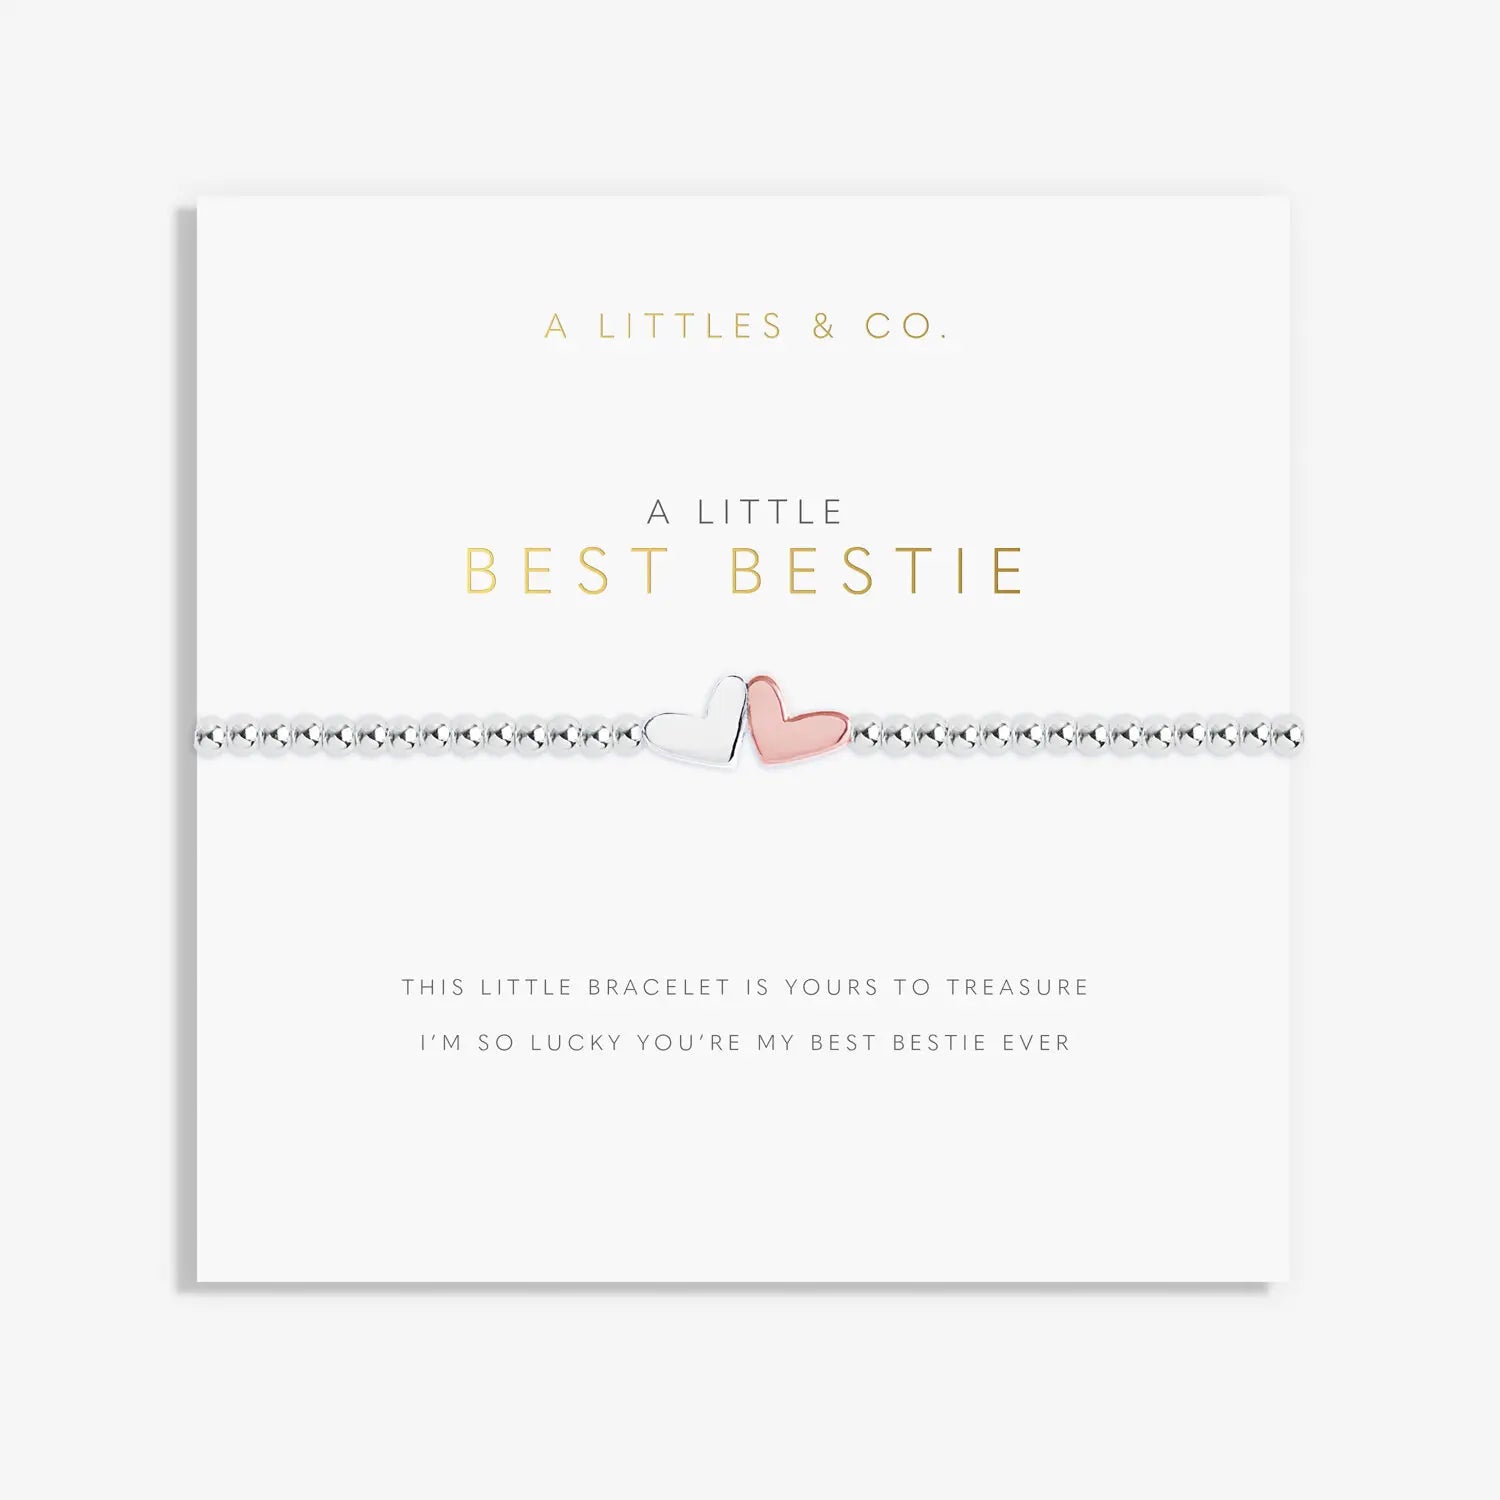 A Little Best Bestie Bracelet Card View